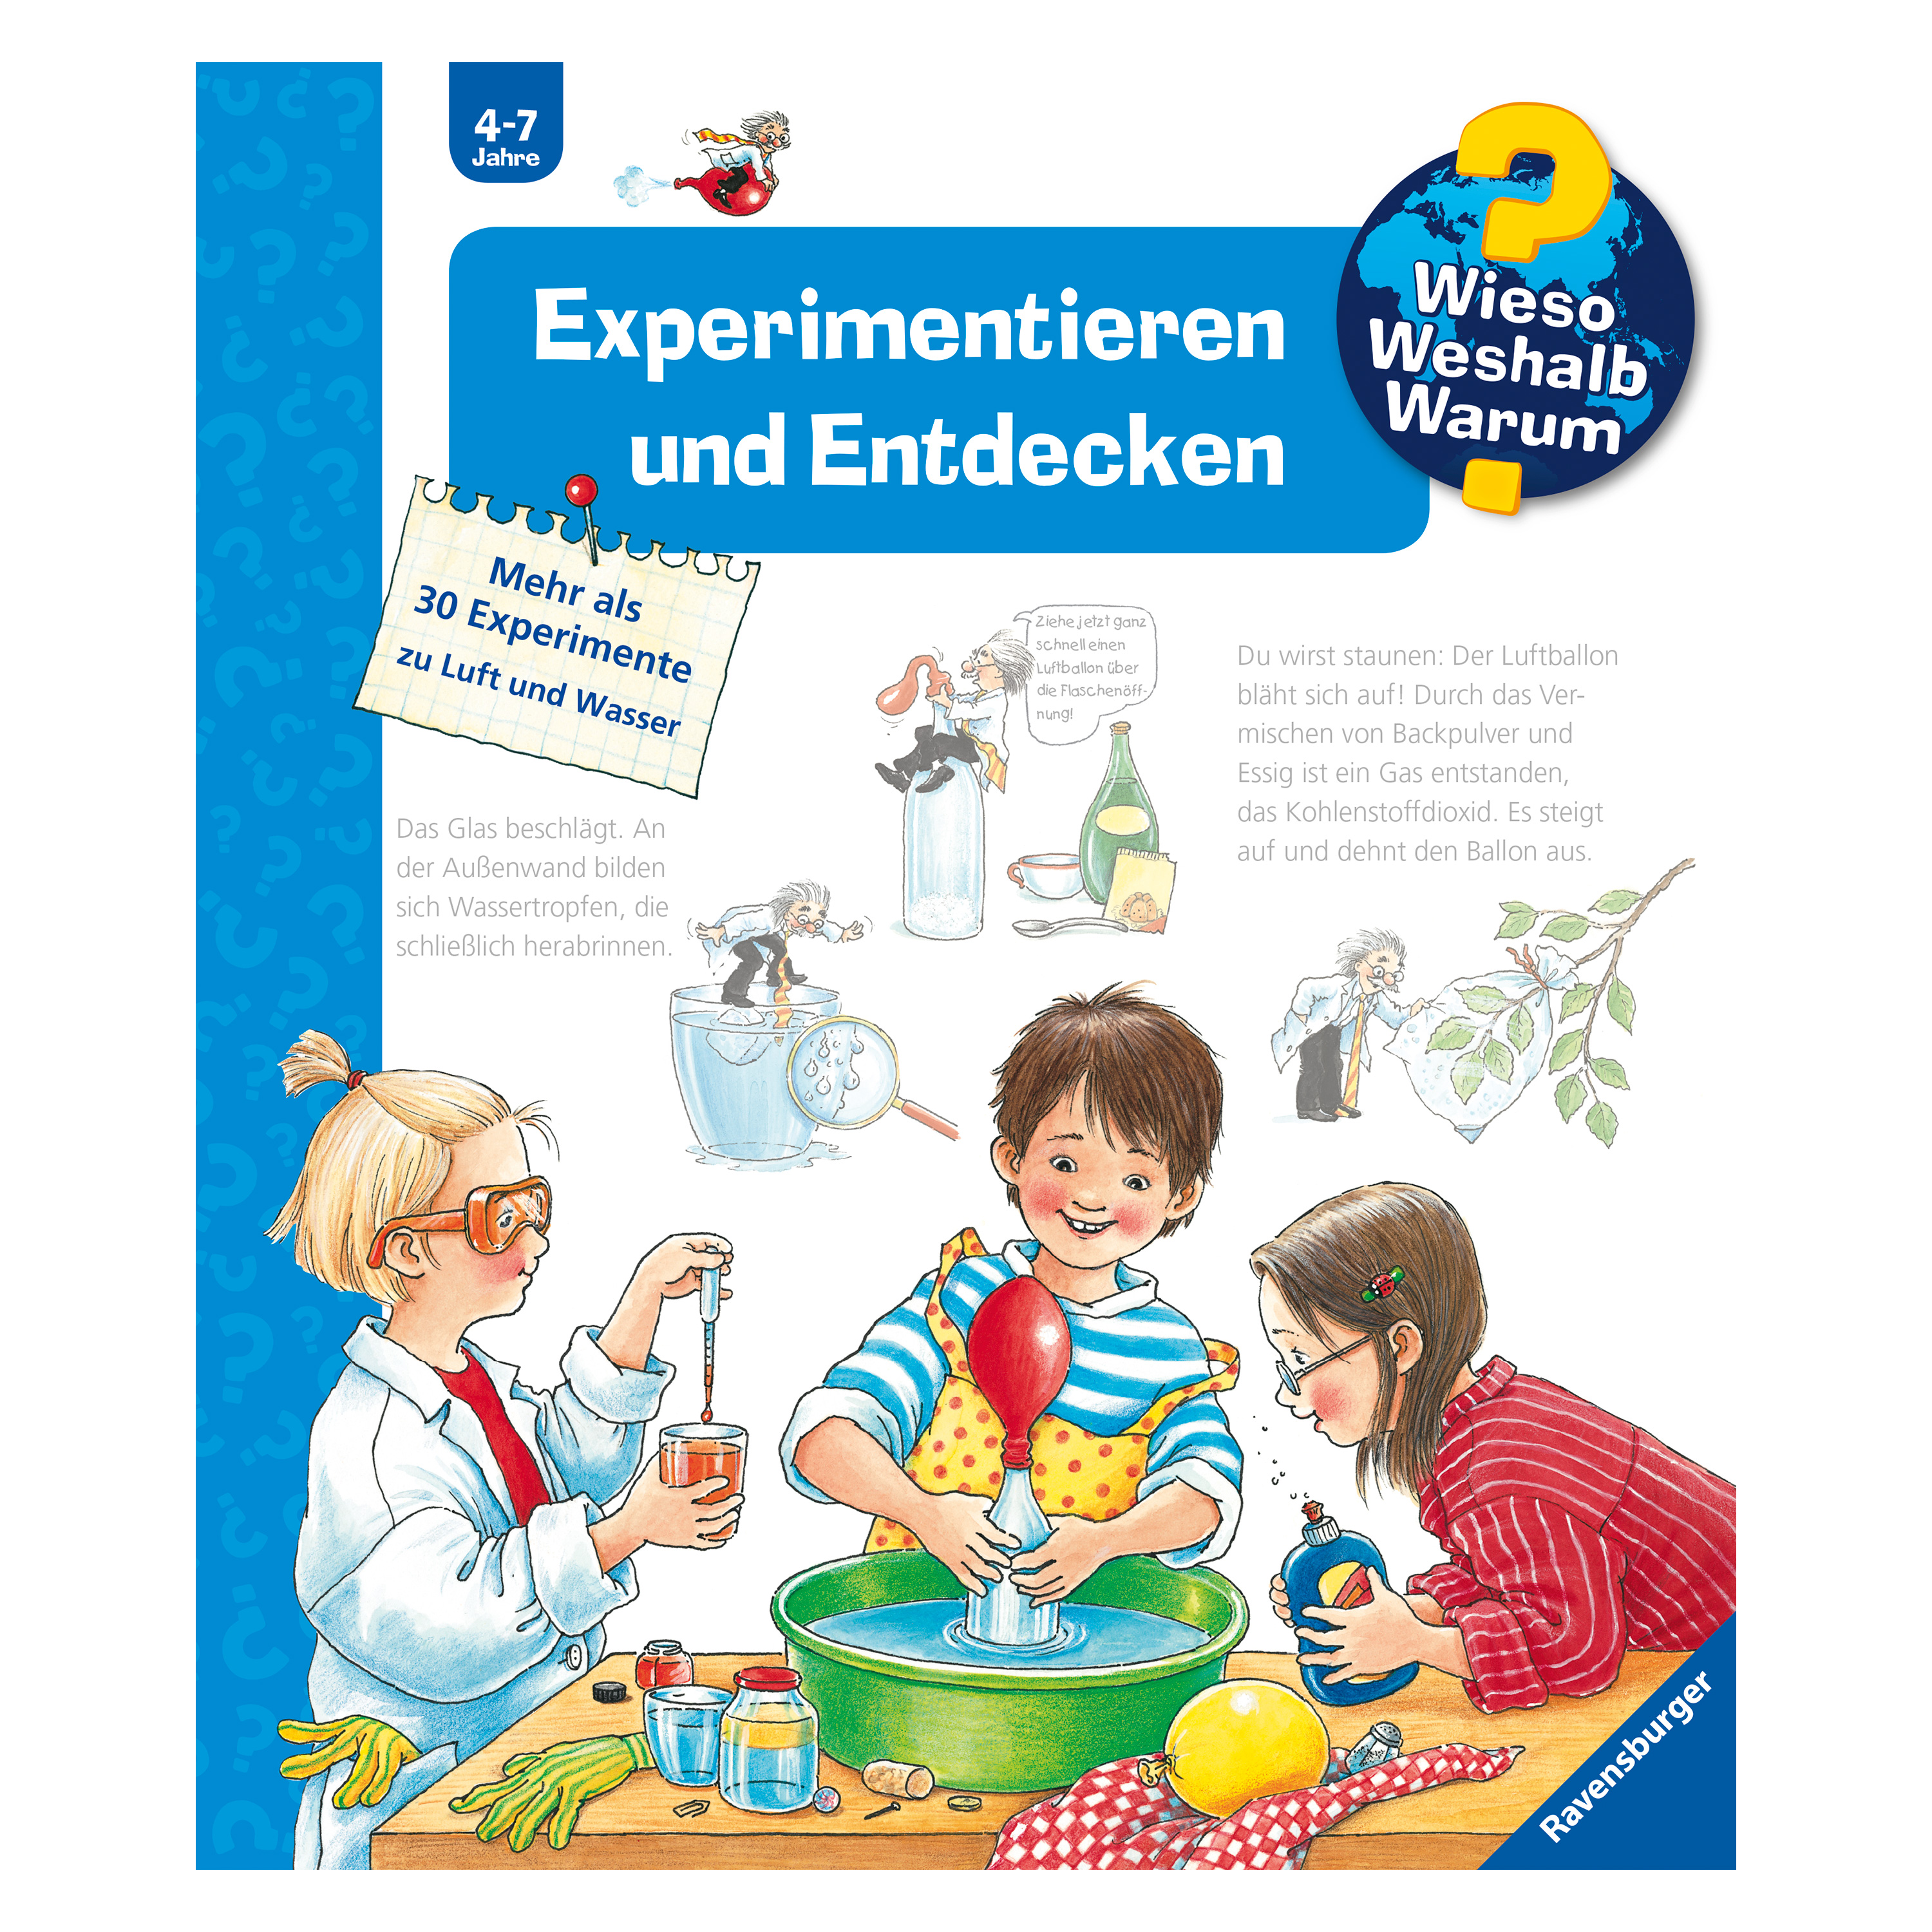 WWW 'Experimentieren und Entdecken' (Bd. 29)